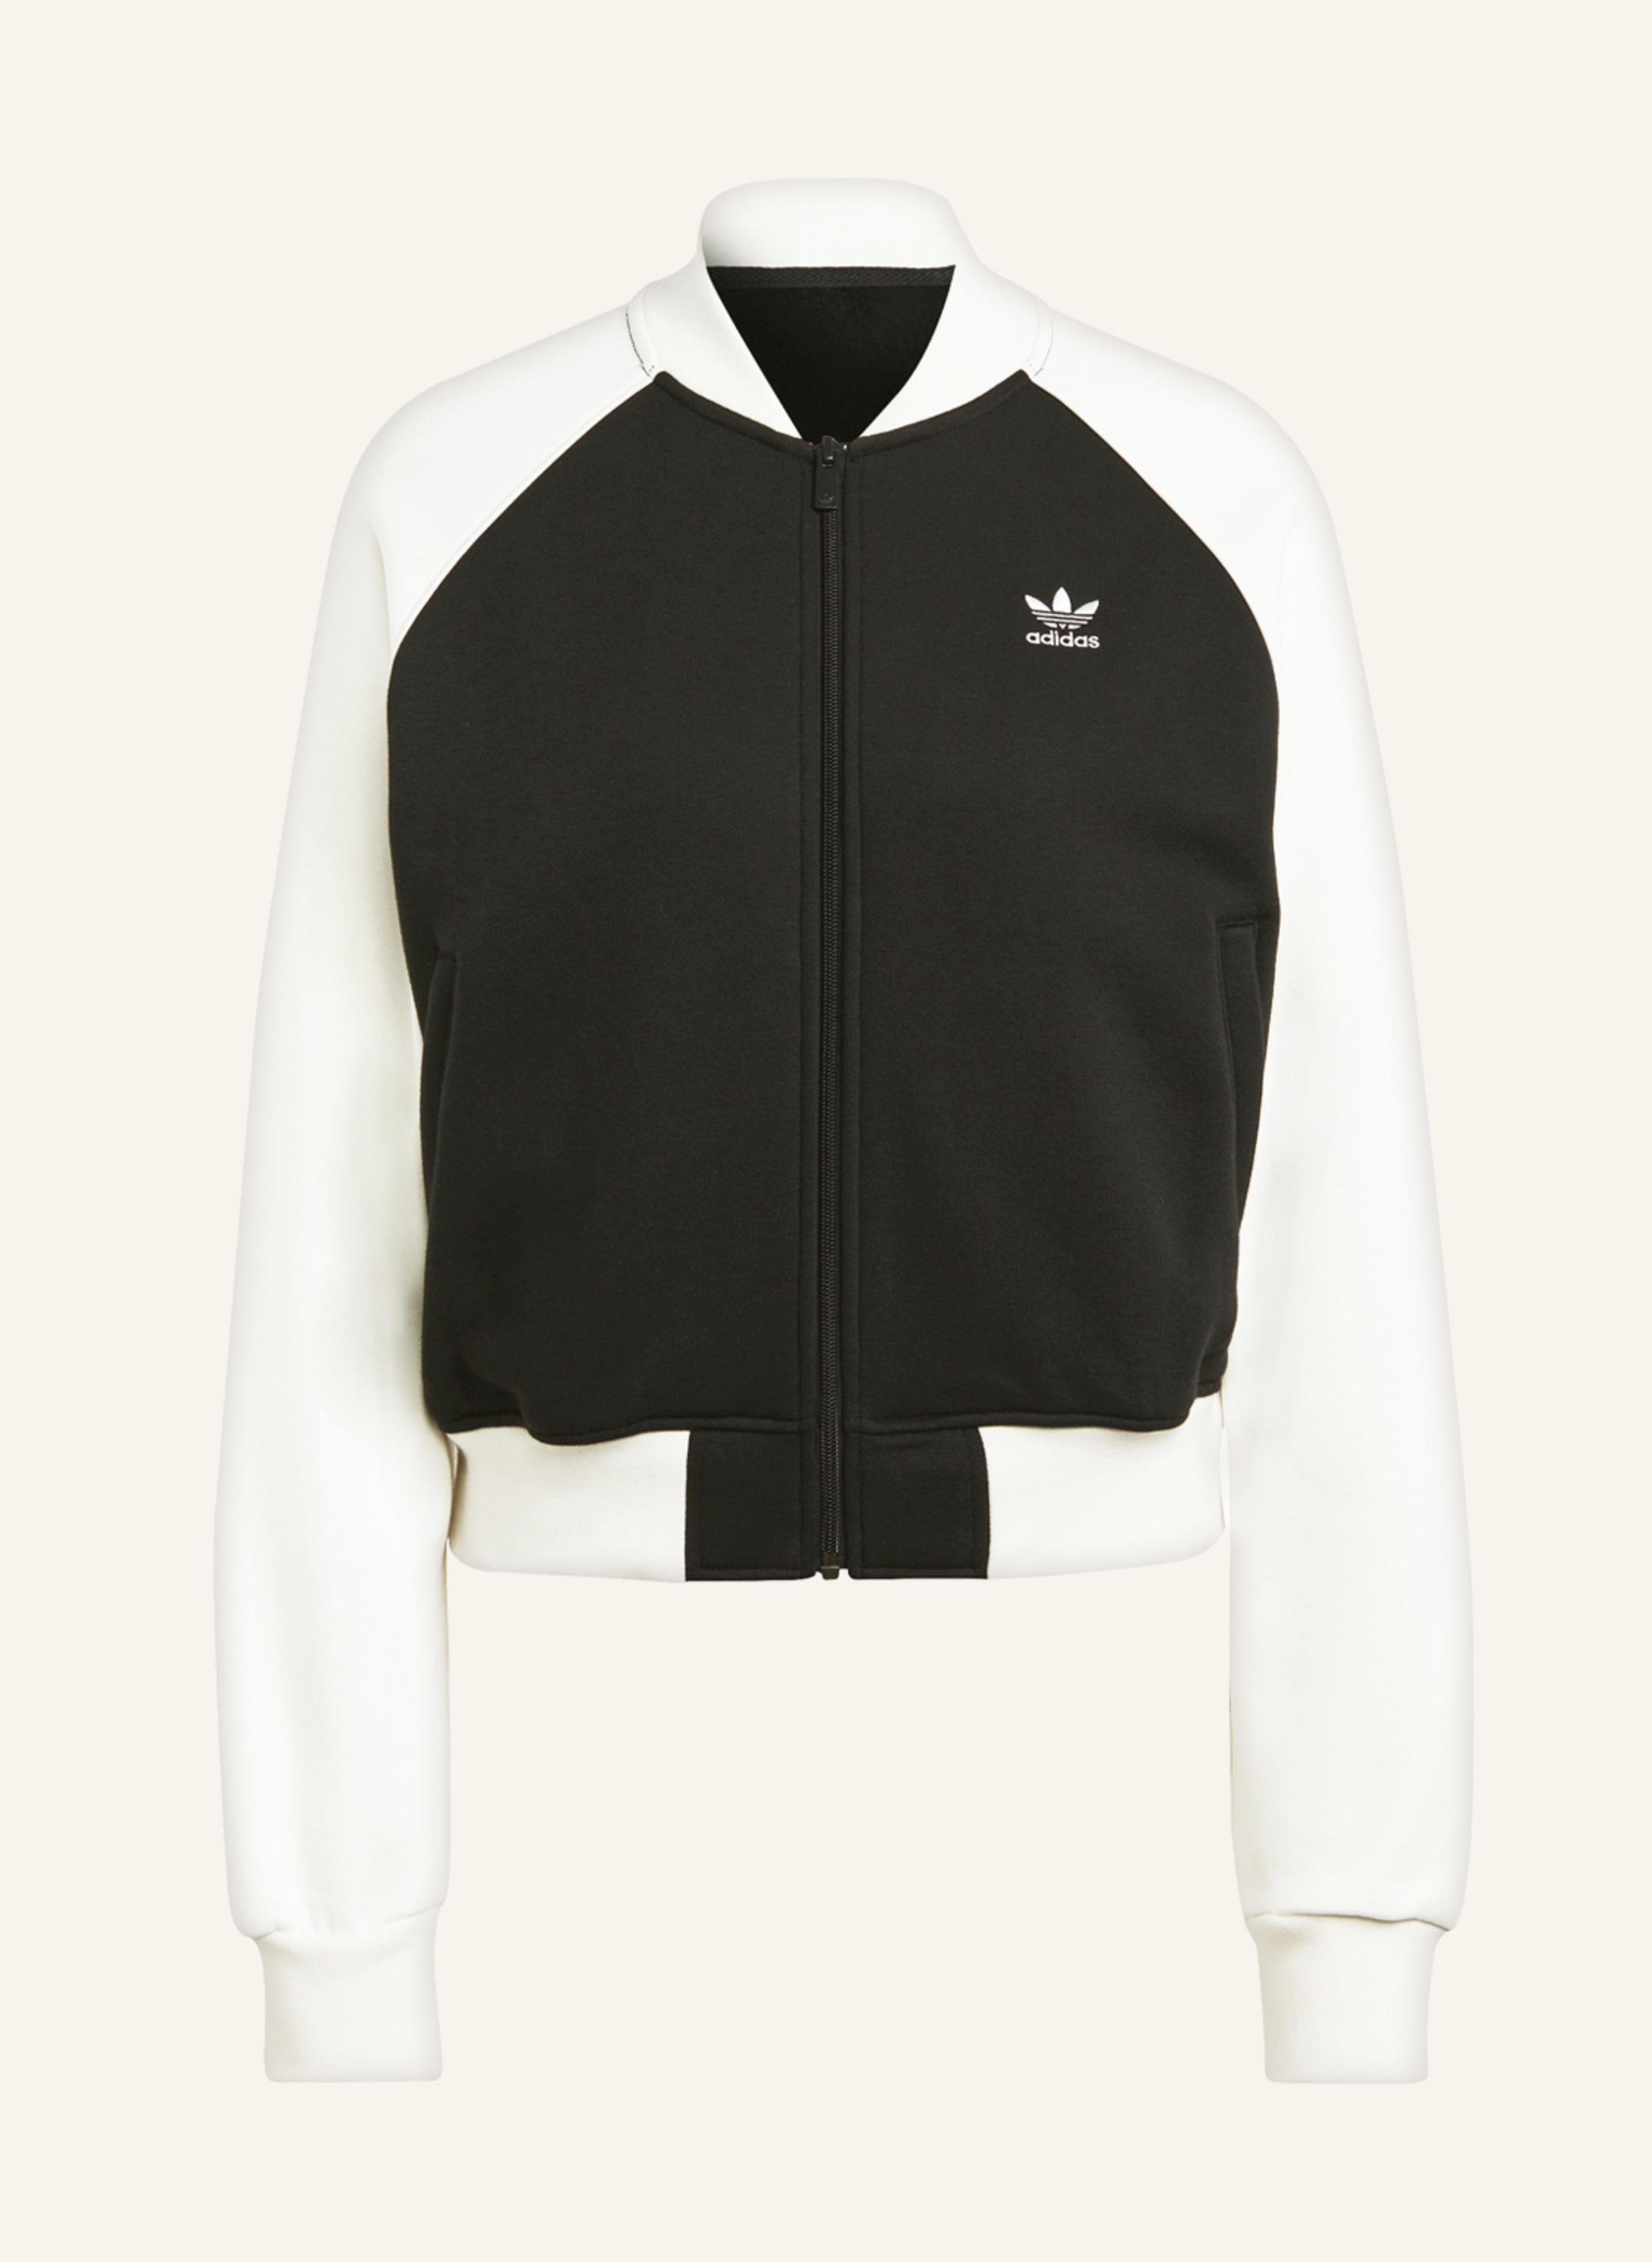 adidas Originals Sweat jacket in ecru ADICOLOR TREFOIL black/ CLASSICS